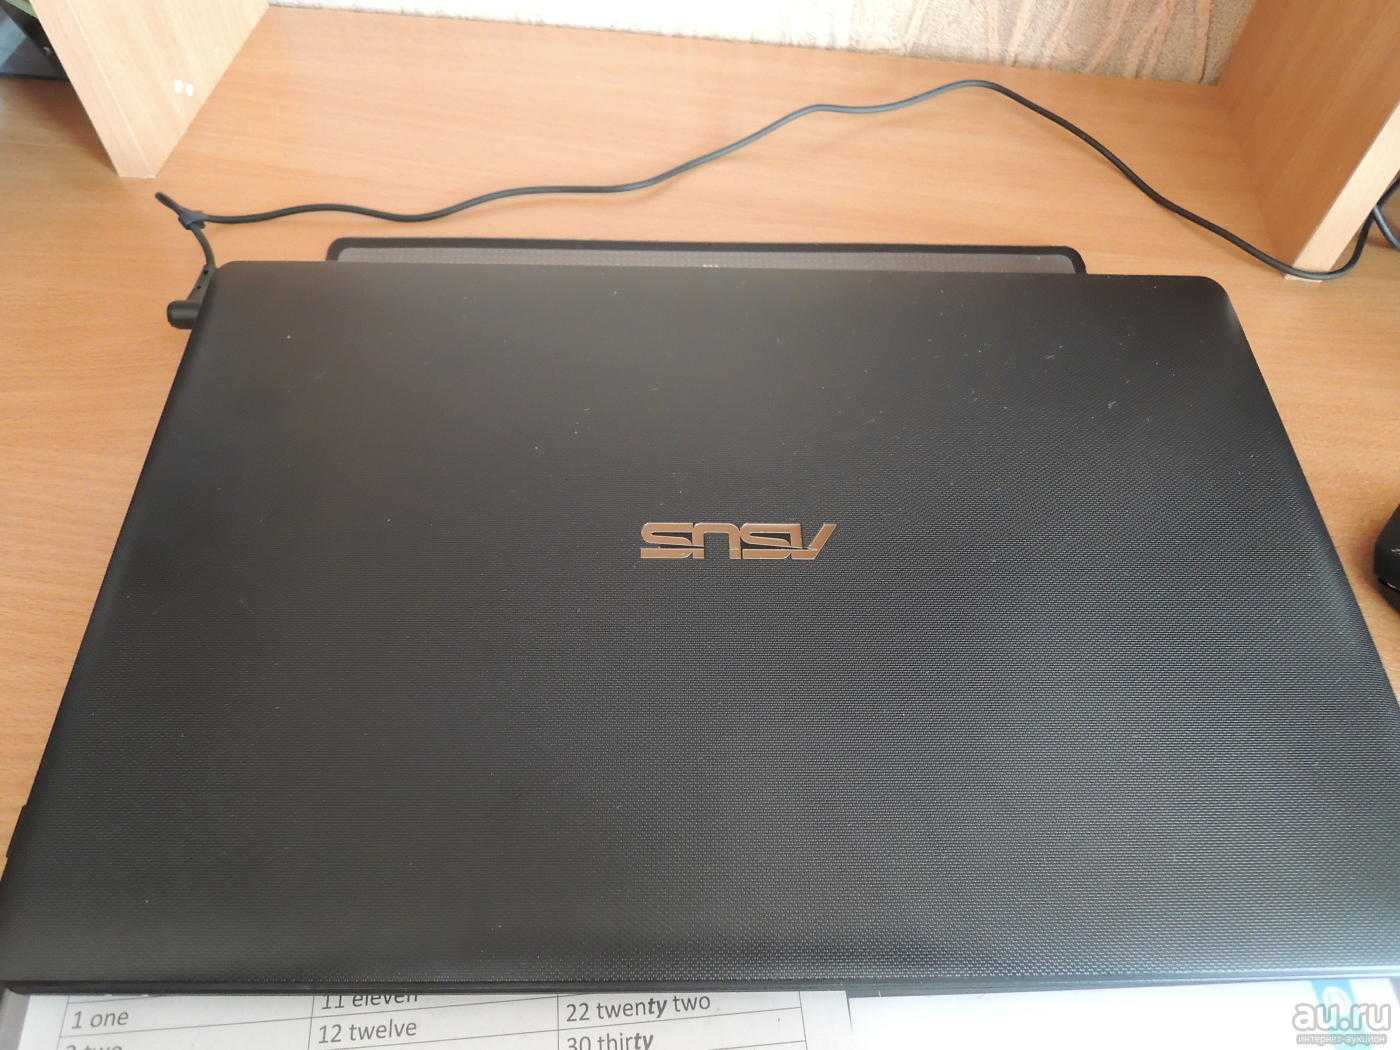 Ноутбук Asus R558U (R558U-XX021T) Black - подробные характеристики обзоры видео фото Цены в интернет-магазинах где можно купить ноутбук Asus R558U (R558U-XX021T) Black